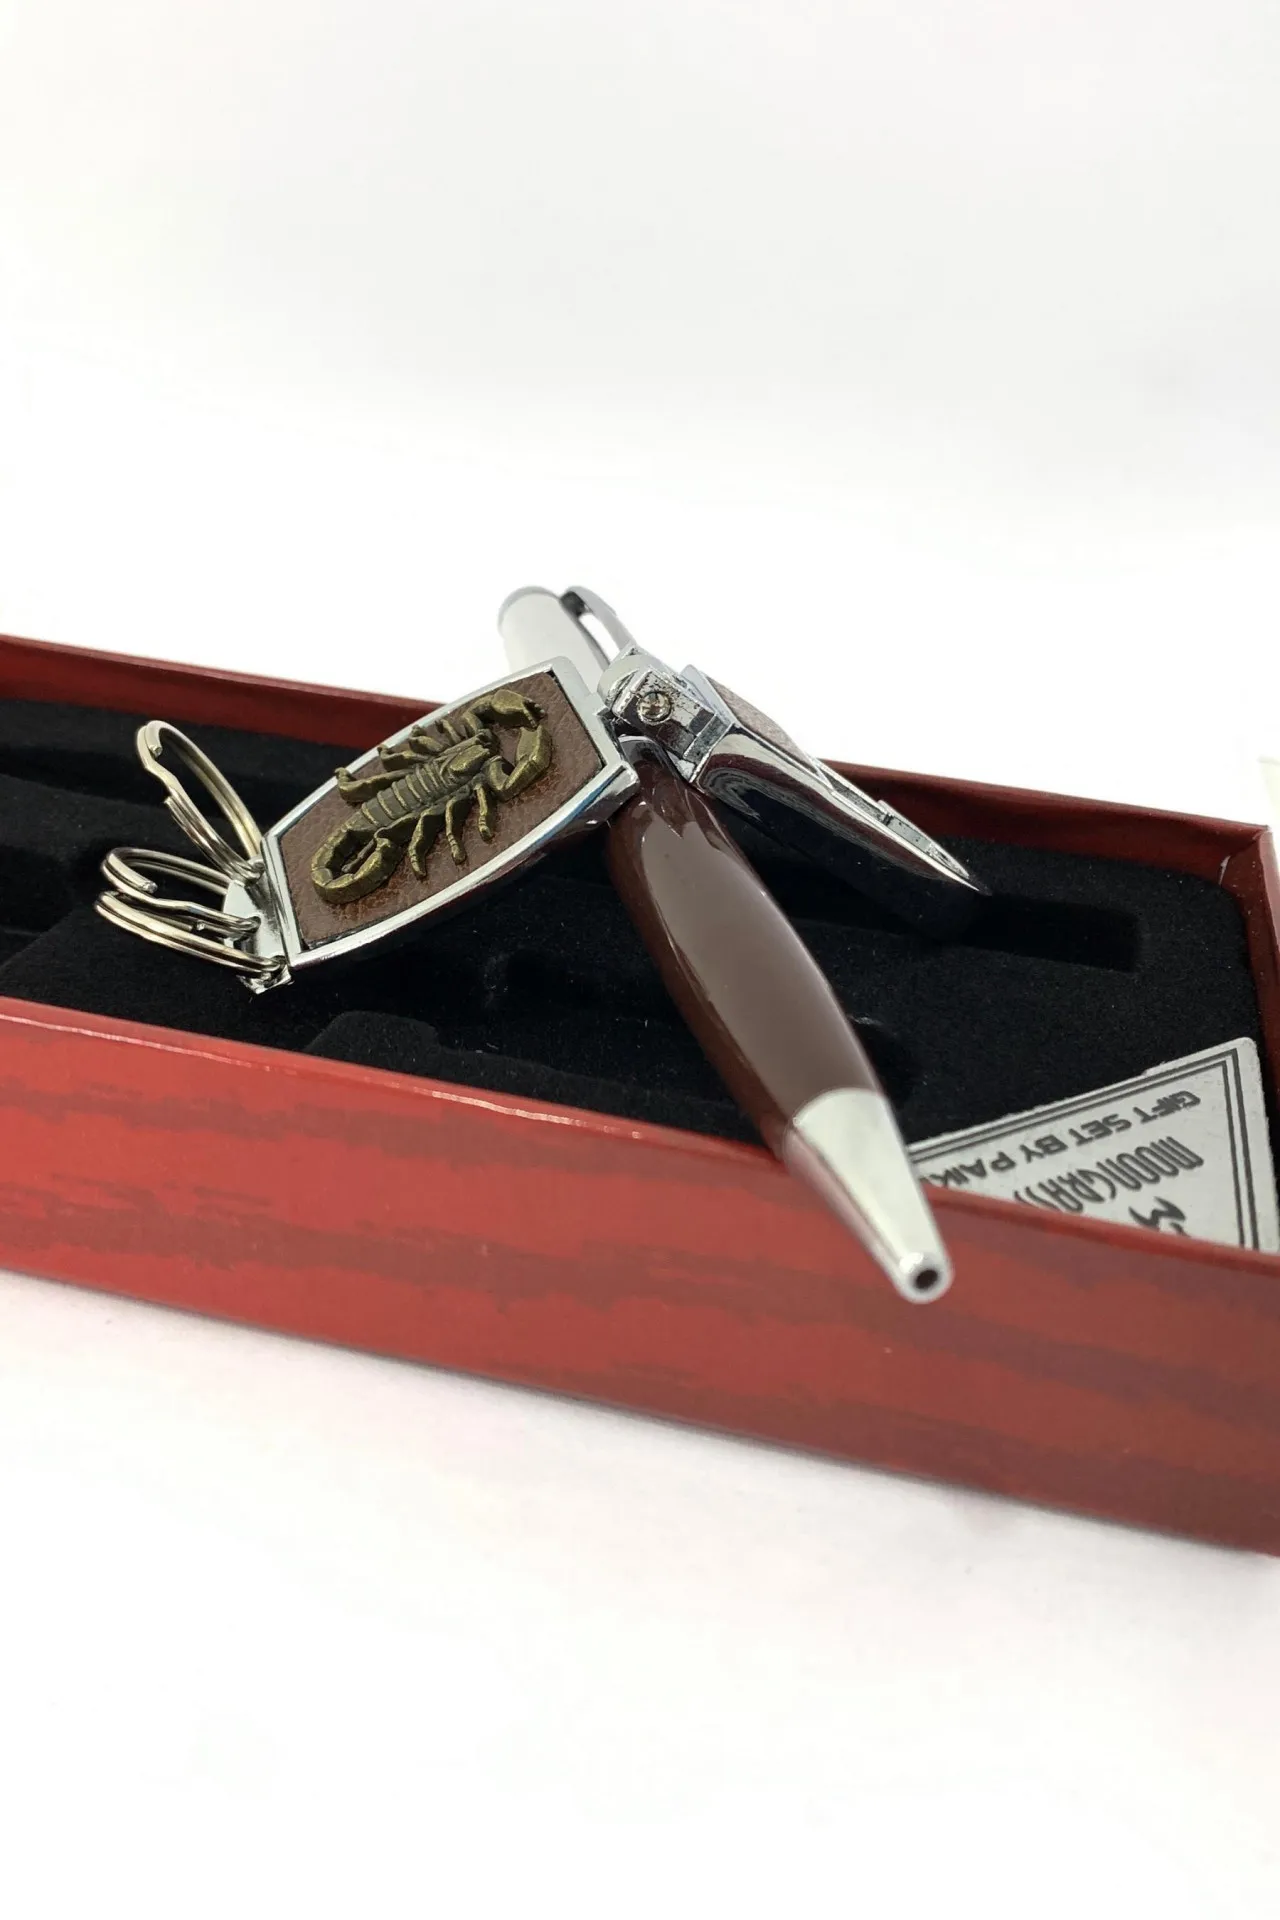 Подарочный набор - брелок, ручка, скорпион a023 SHK Gift#2